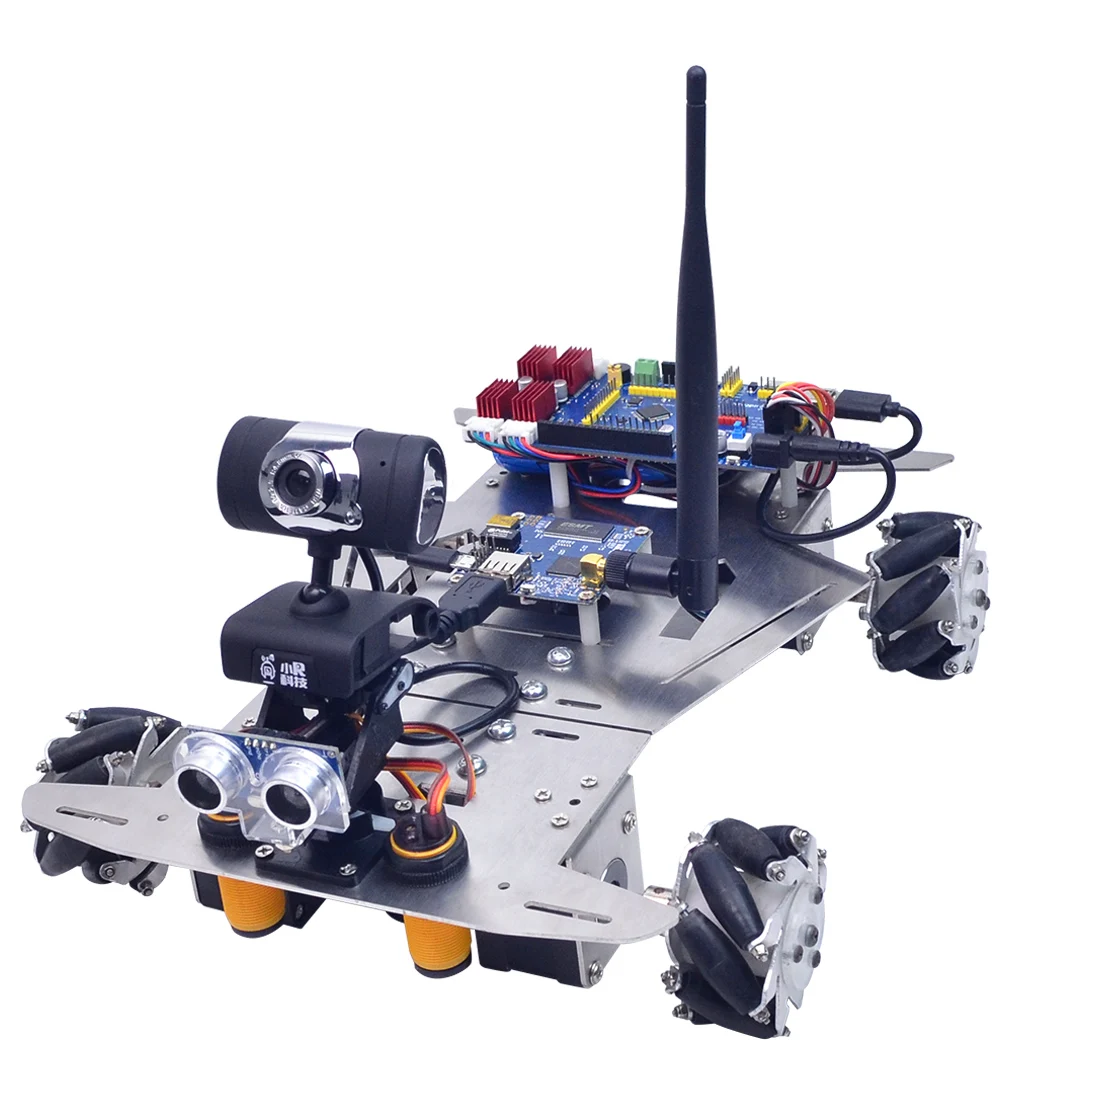 XR Master всенаправленный робот Mecanum Wheel программируемые игрушки игры для детей и взрослых креативный подарок-версия wifi